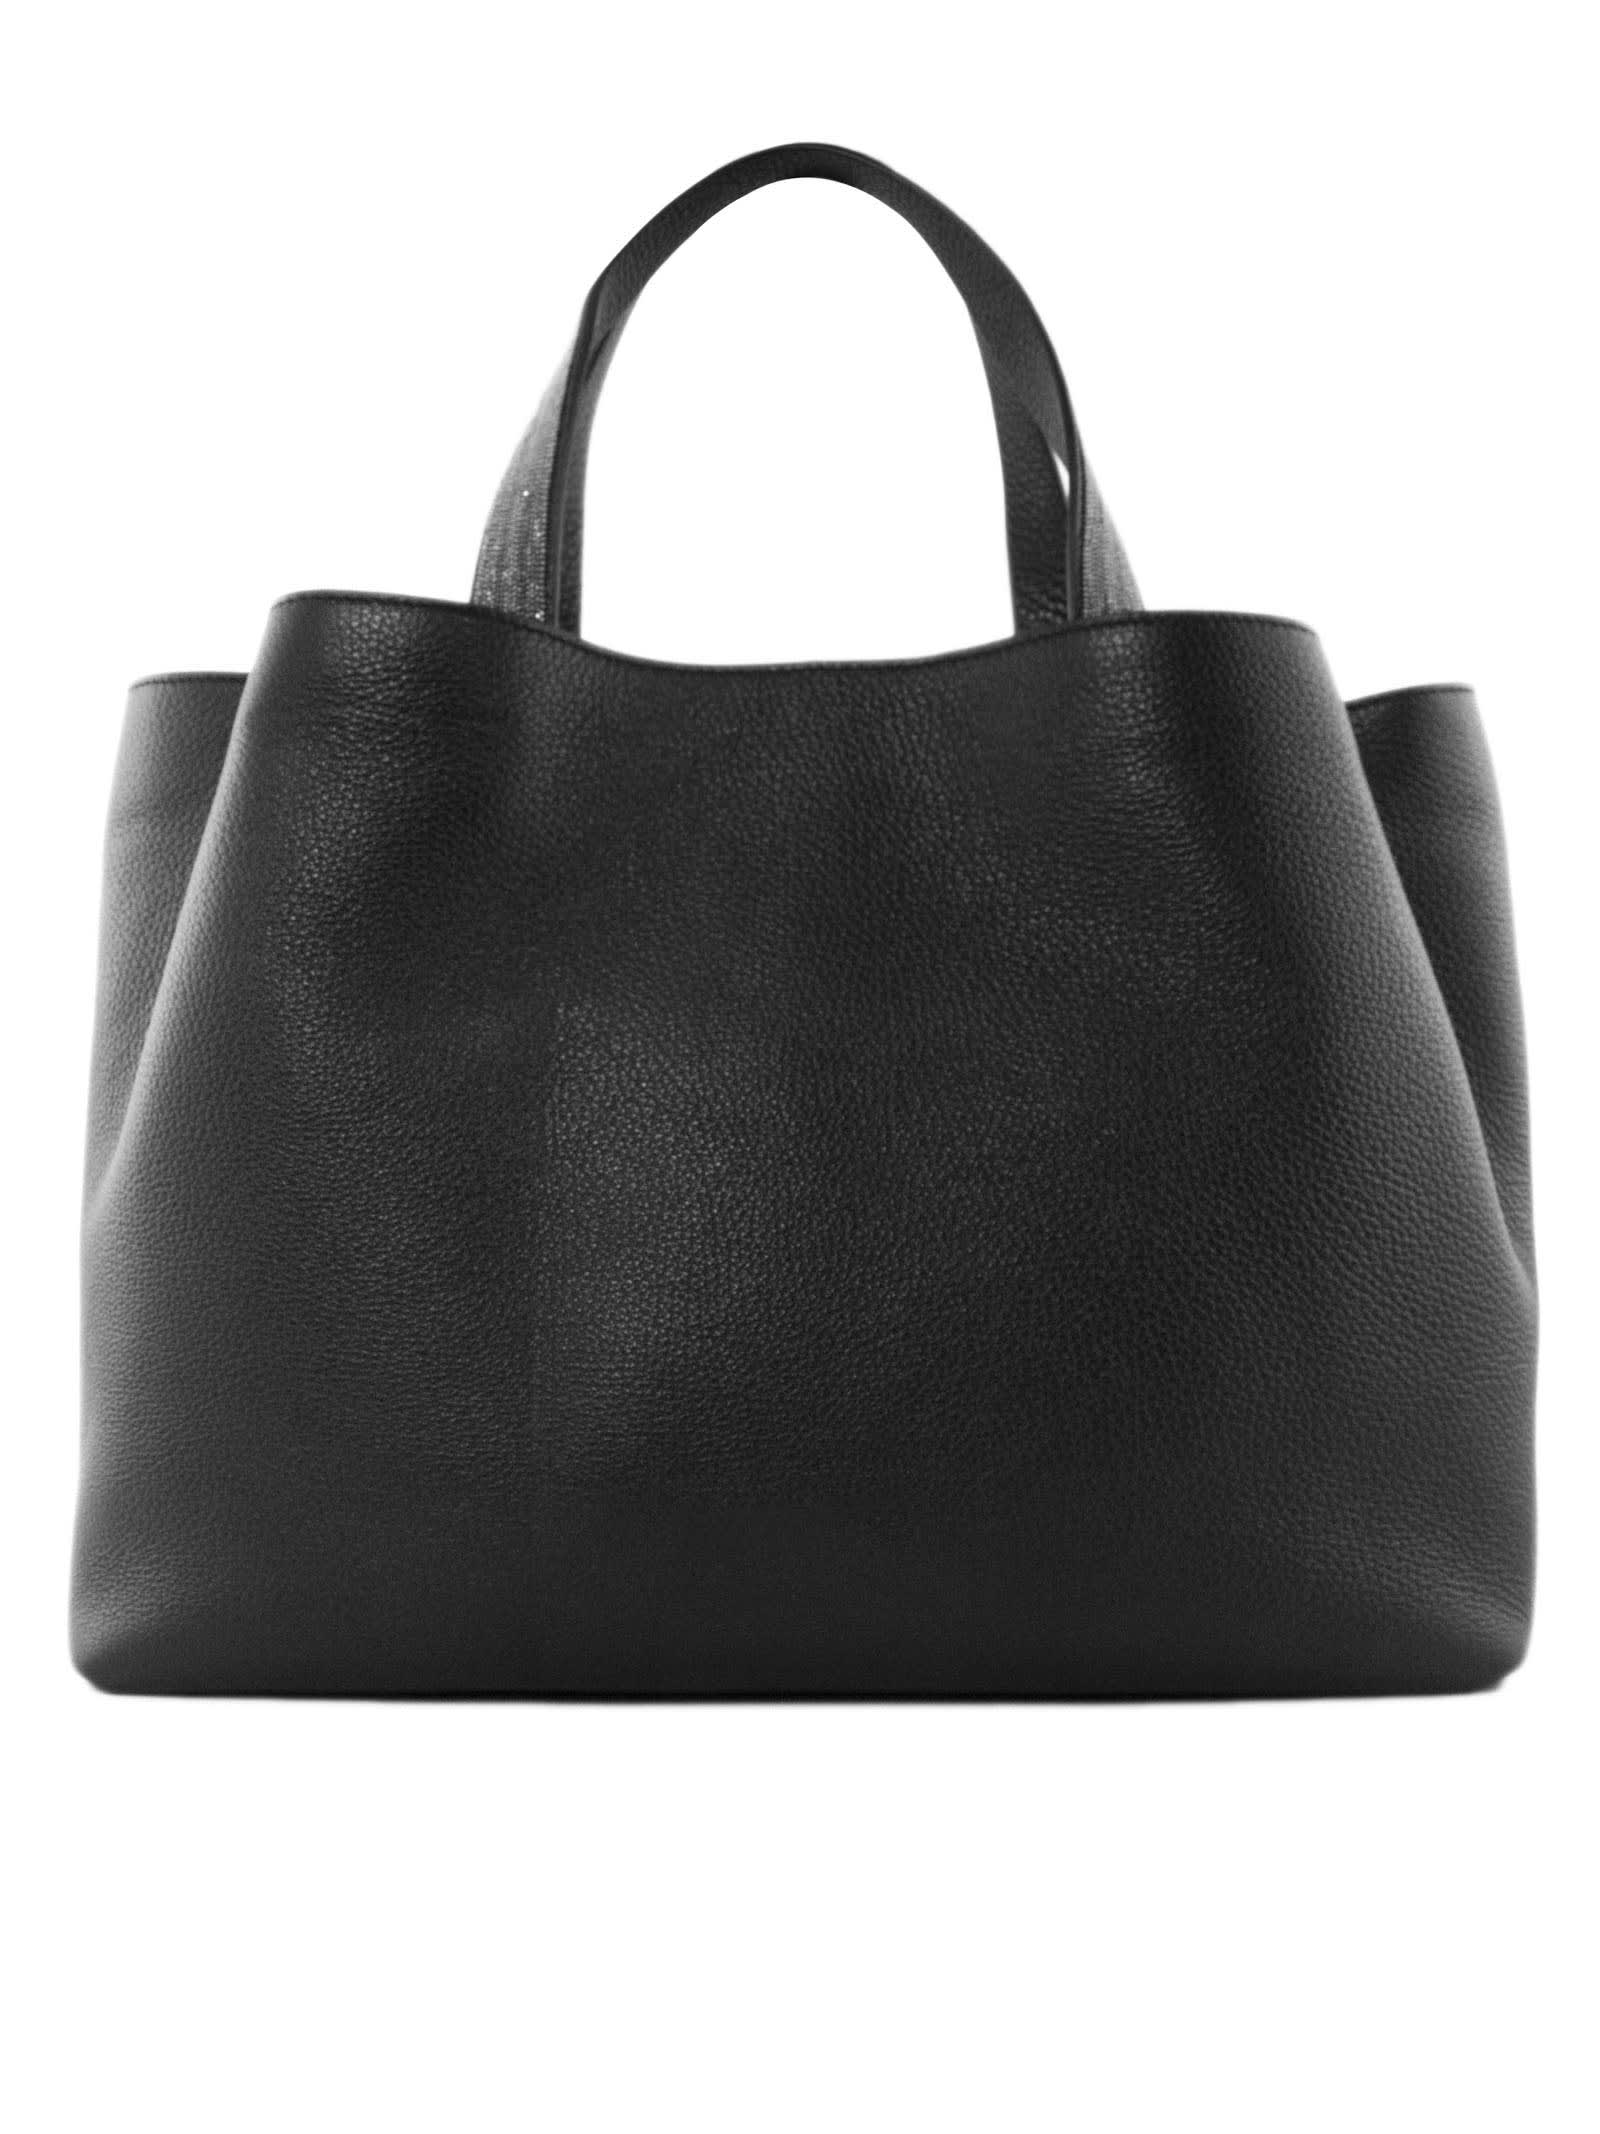 Fabiana Filippi Black Inga Leather Bag